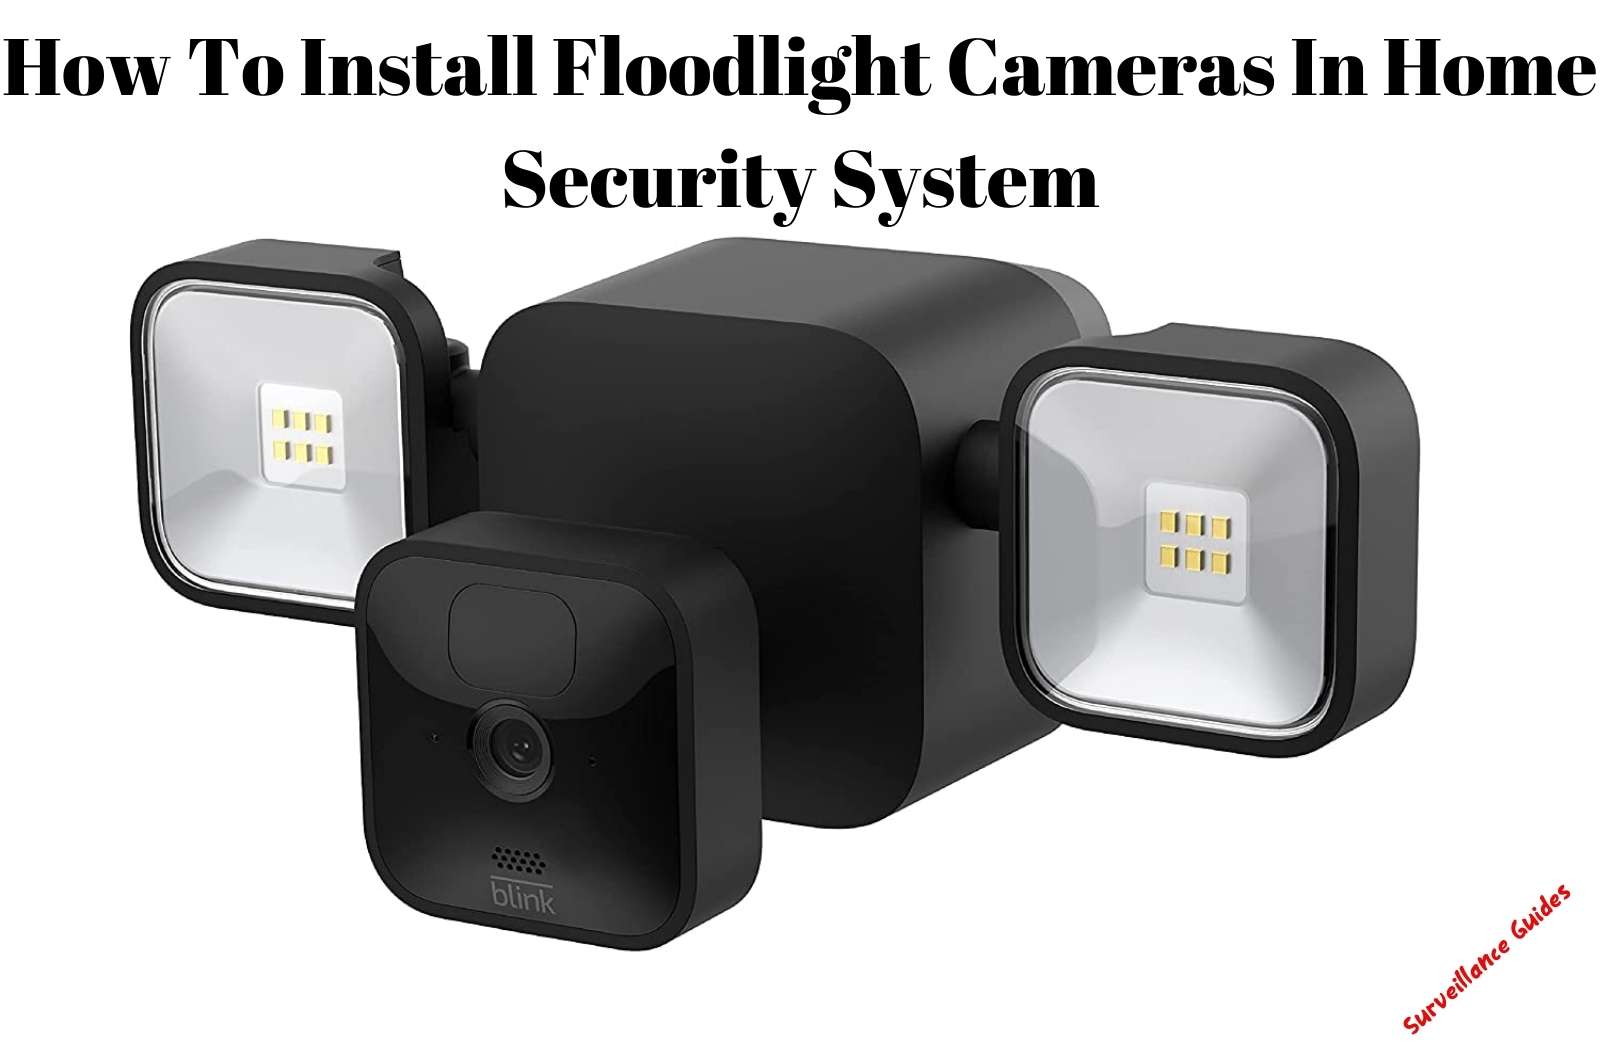 Install Floodlight Cameras